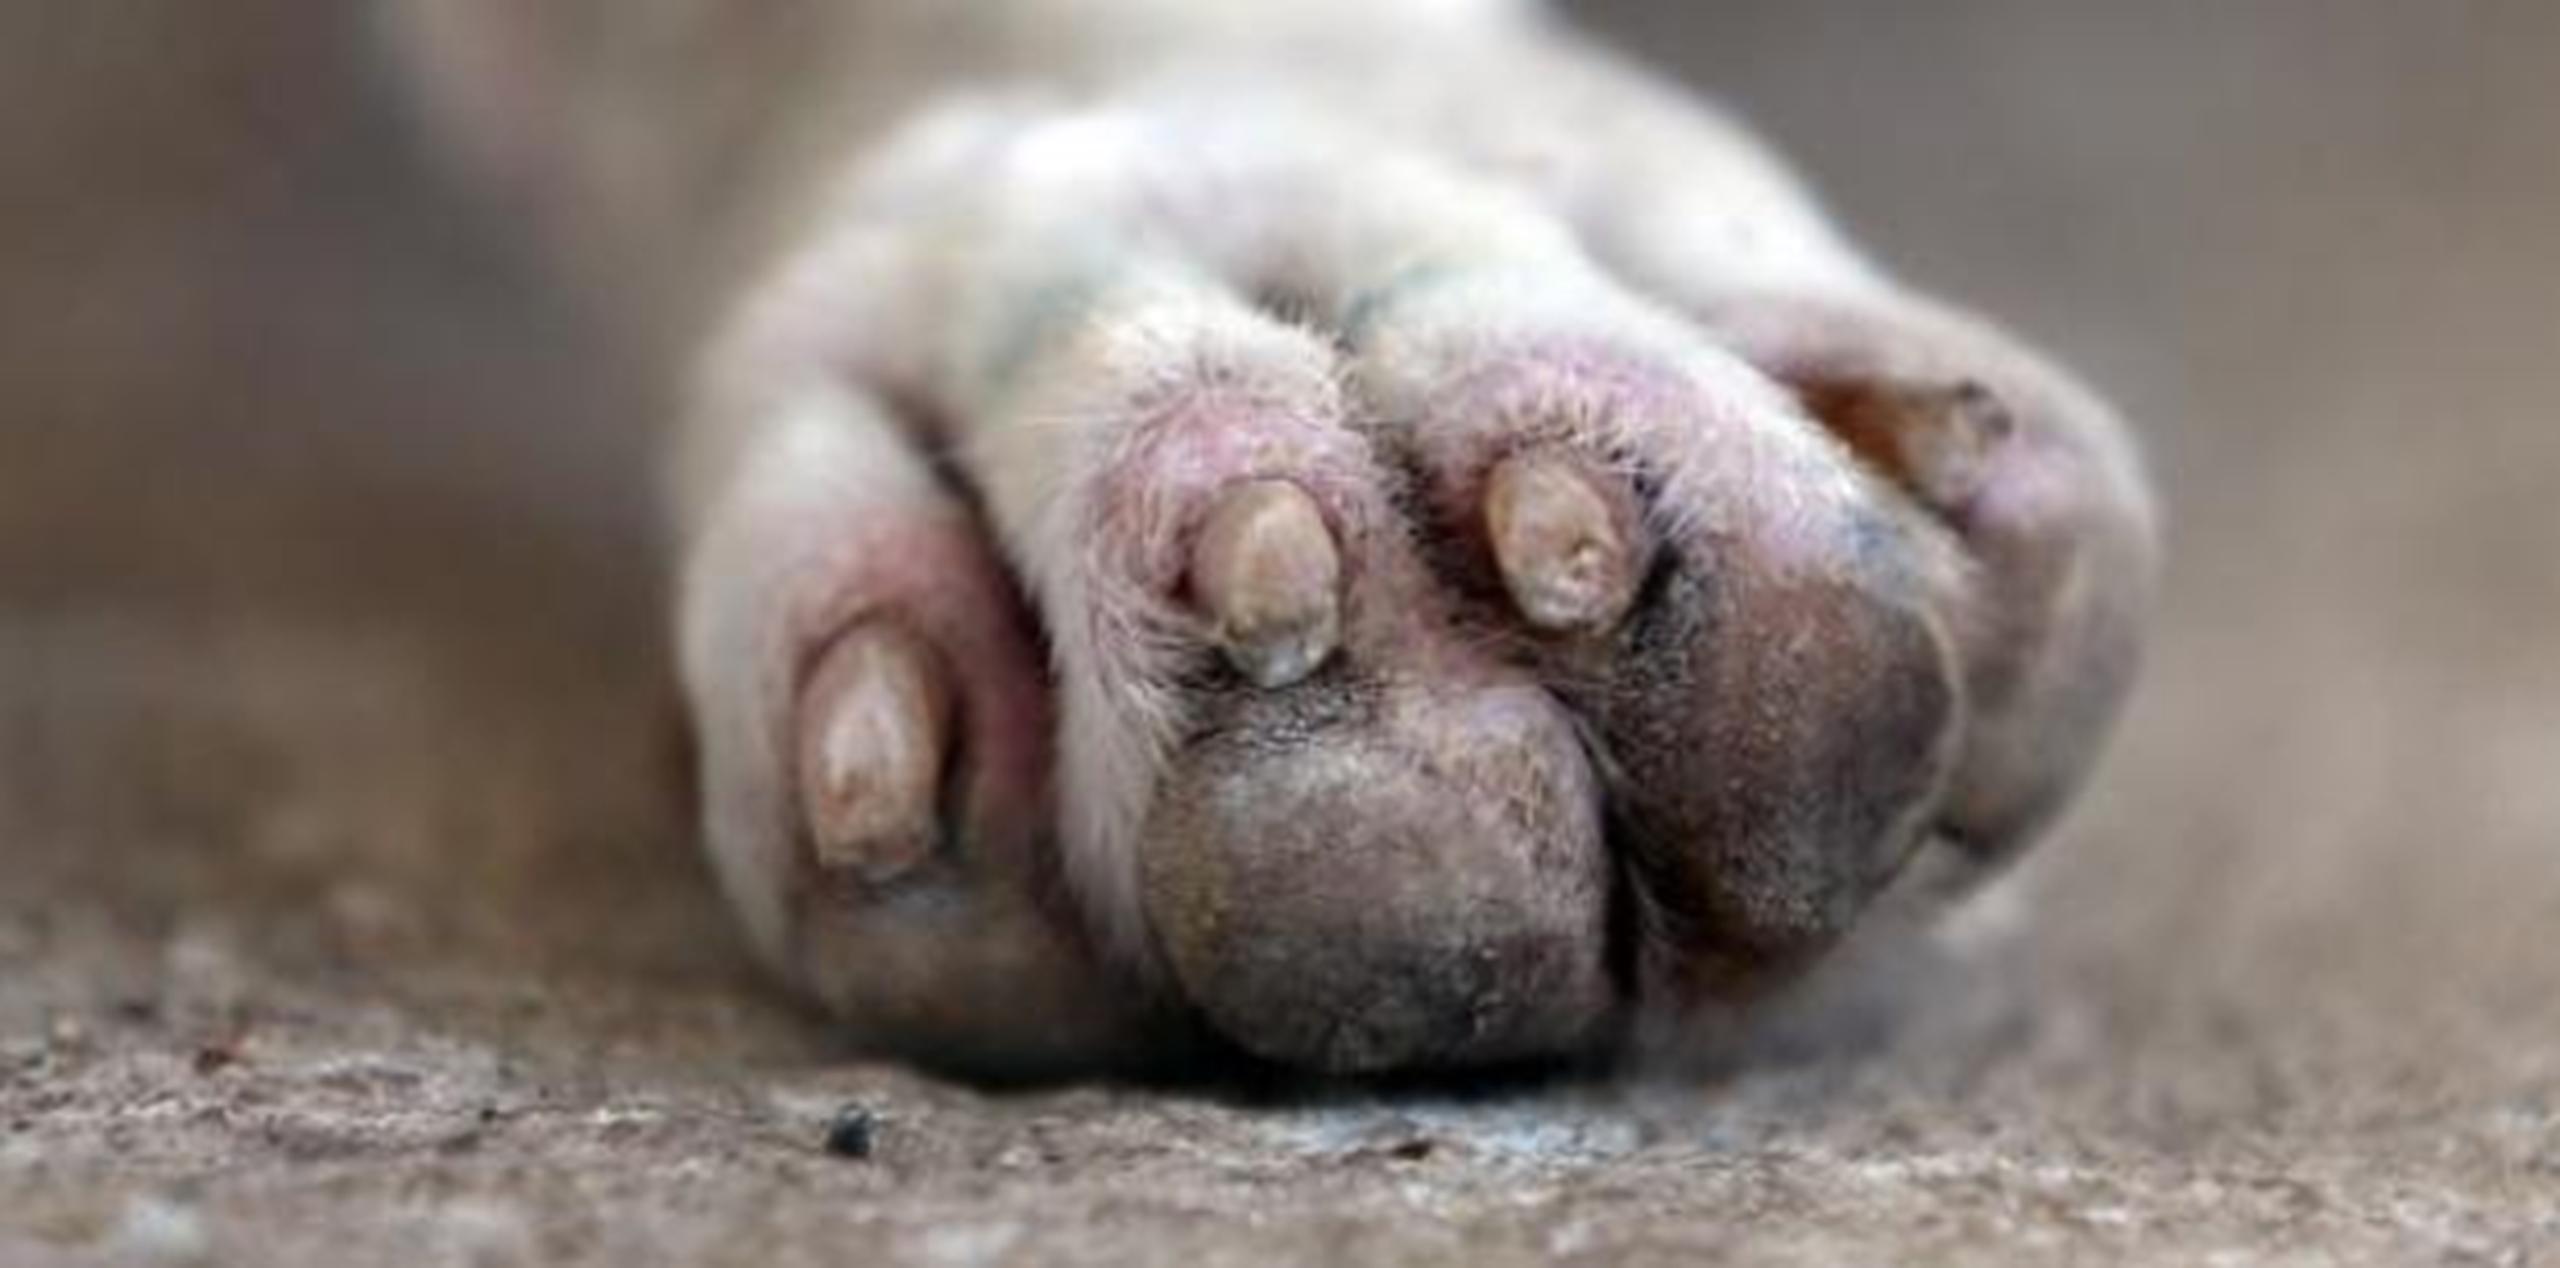 El Departamento de Salud gasta unos $2,000,000 al año en atender unas 10,000 mordeduras de perros realengos. (Archivo)